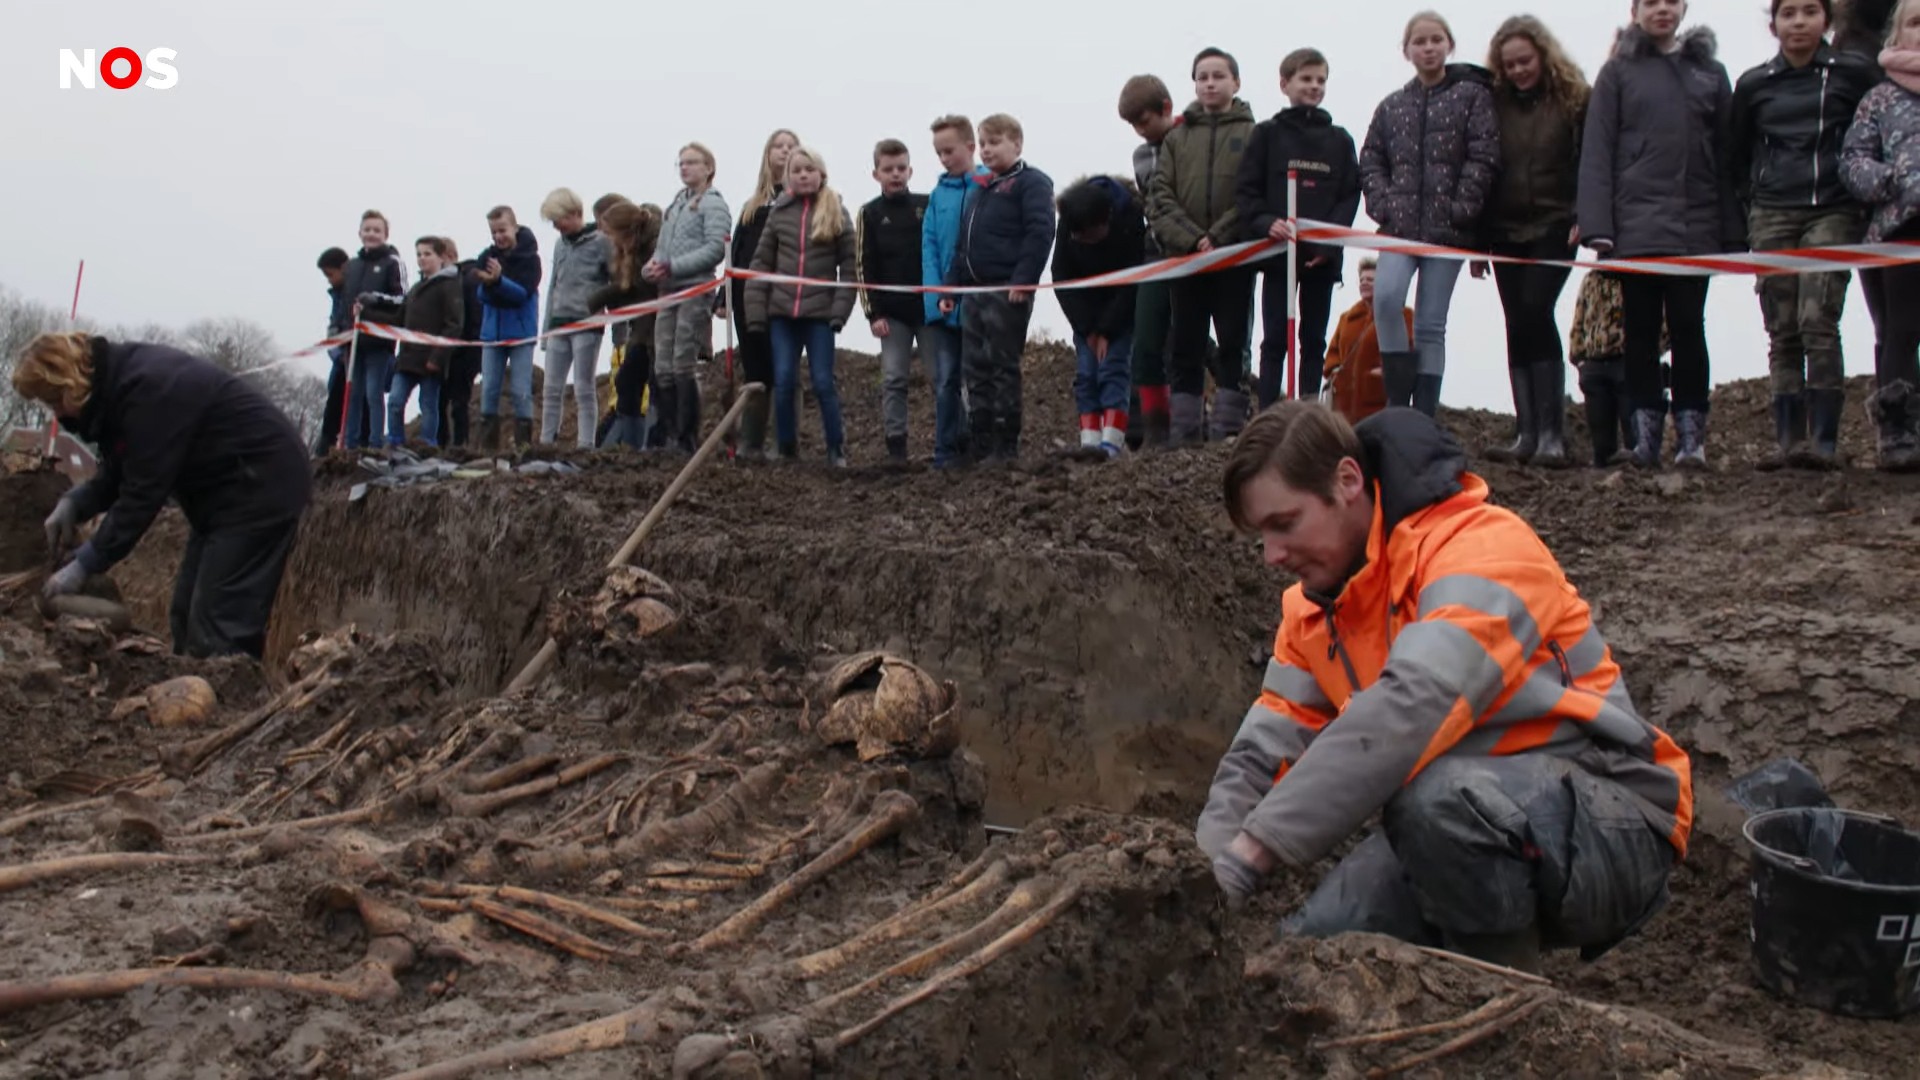 Arqueólogos farão estudos para determinar a idade dos ossos encontrados (Foto: Reprodução / NOS Jeugdjournaal)